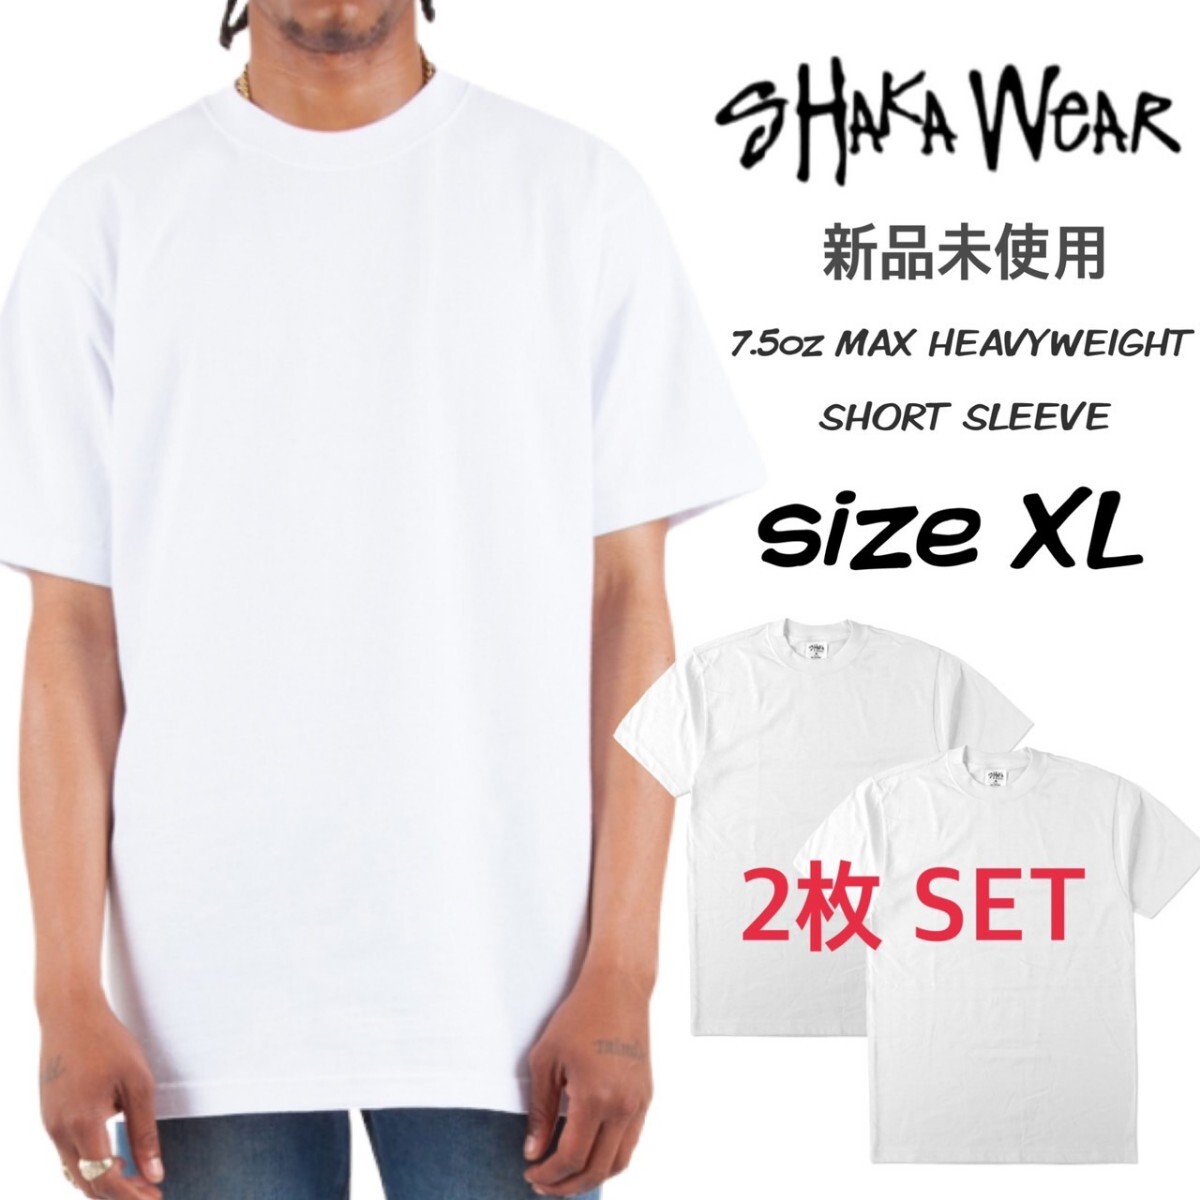 新品未使用 シャカウェア 7.5oz マックスヘビーウェイト 無地 半袖 Tシャツ ホワイト 白 XLサイズ 2枚セット 7.5OZ MAX HEAVYWEIGHT S/S_画像1